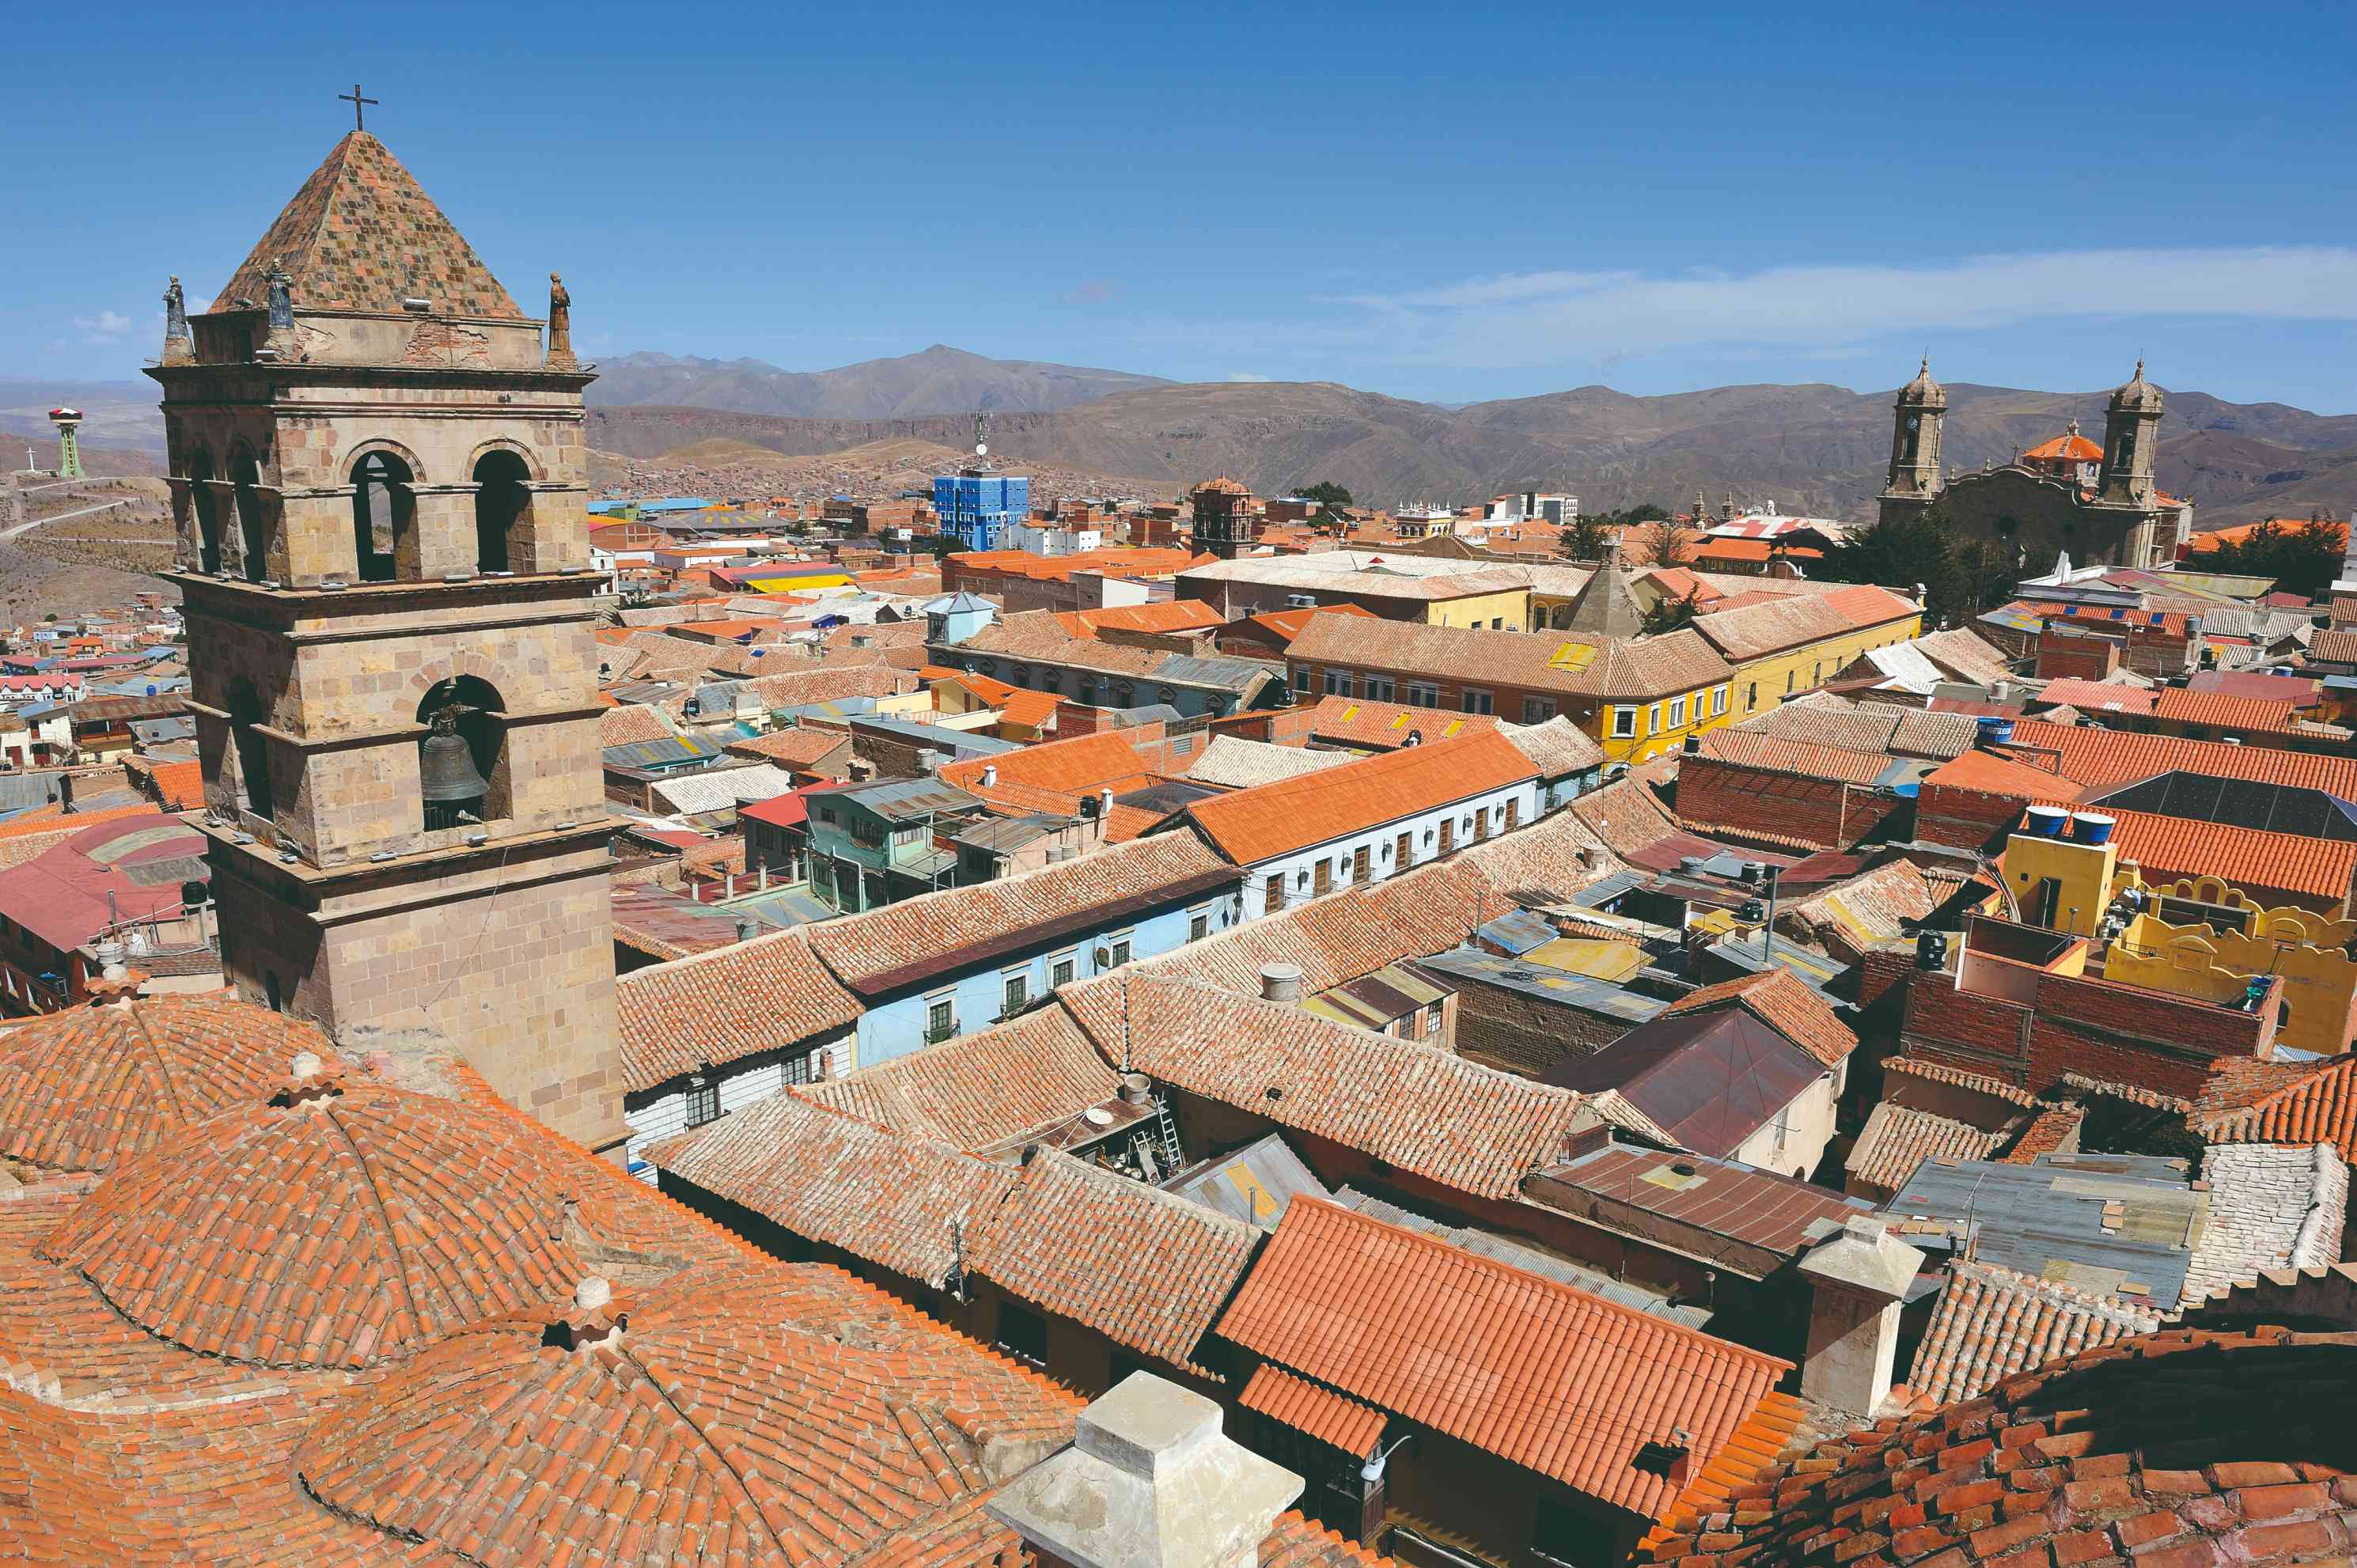 Vue sur le centre ville de Potosí depuis le clocher de l'église de San Francisco.